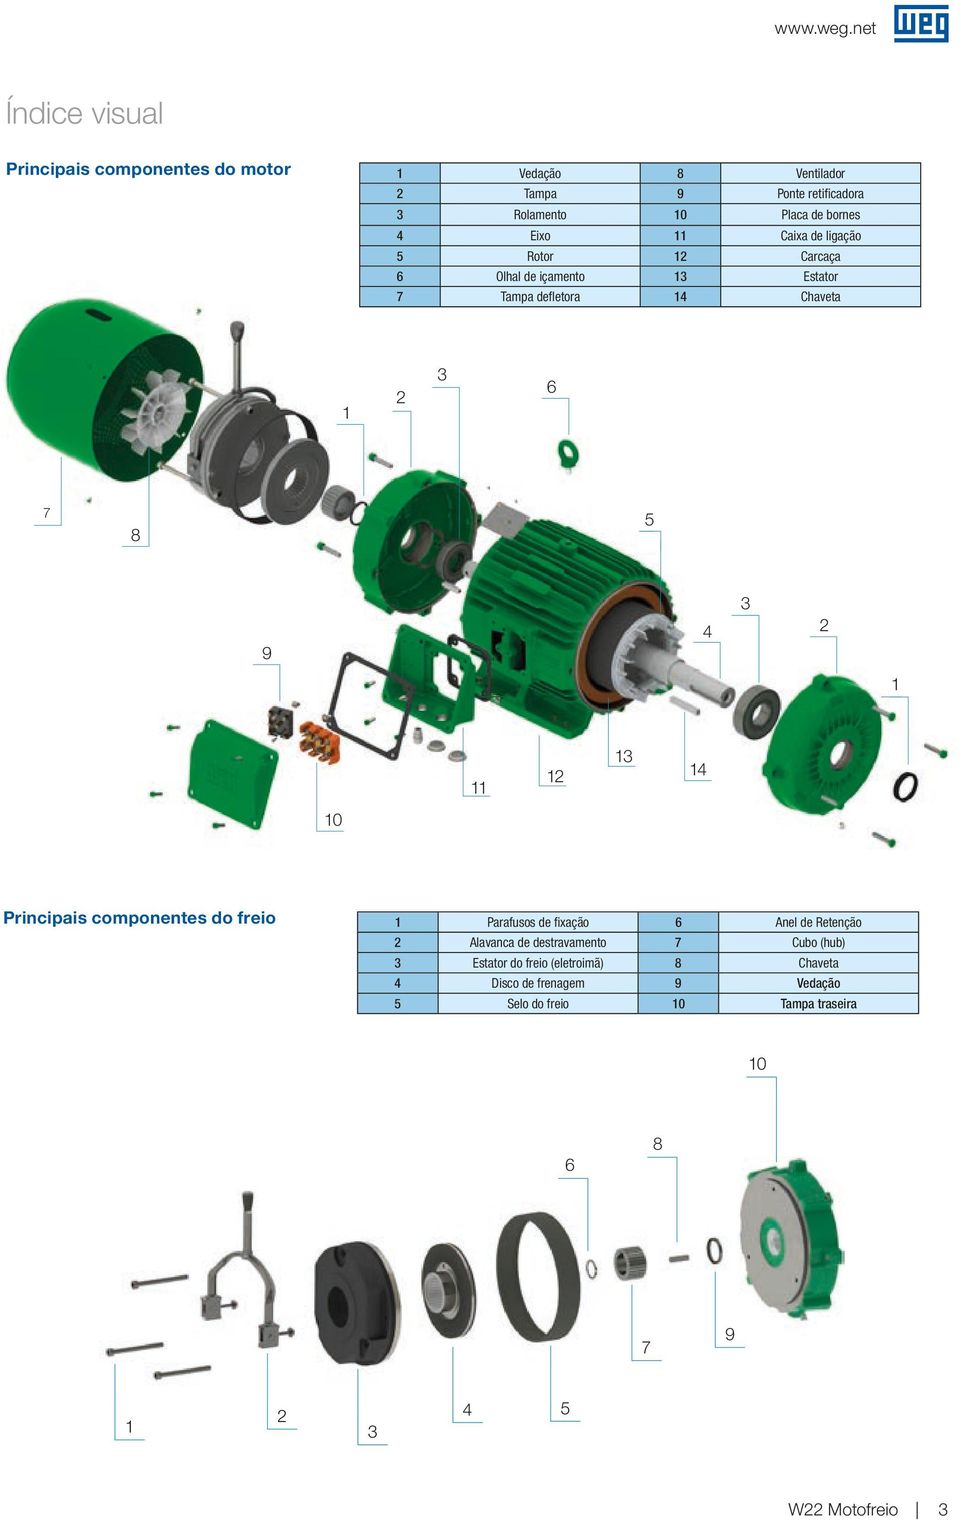 11 12 13 14 10 15 Principais componentes do freio 1 Parafusos de fixação 6 Anel de Retenção 2 Alavanca de destravamento 7 Cubo (hub) 3